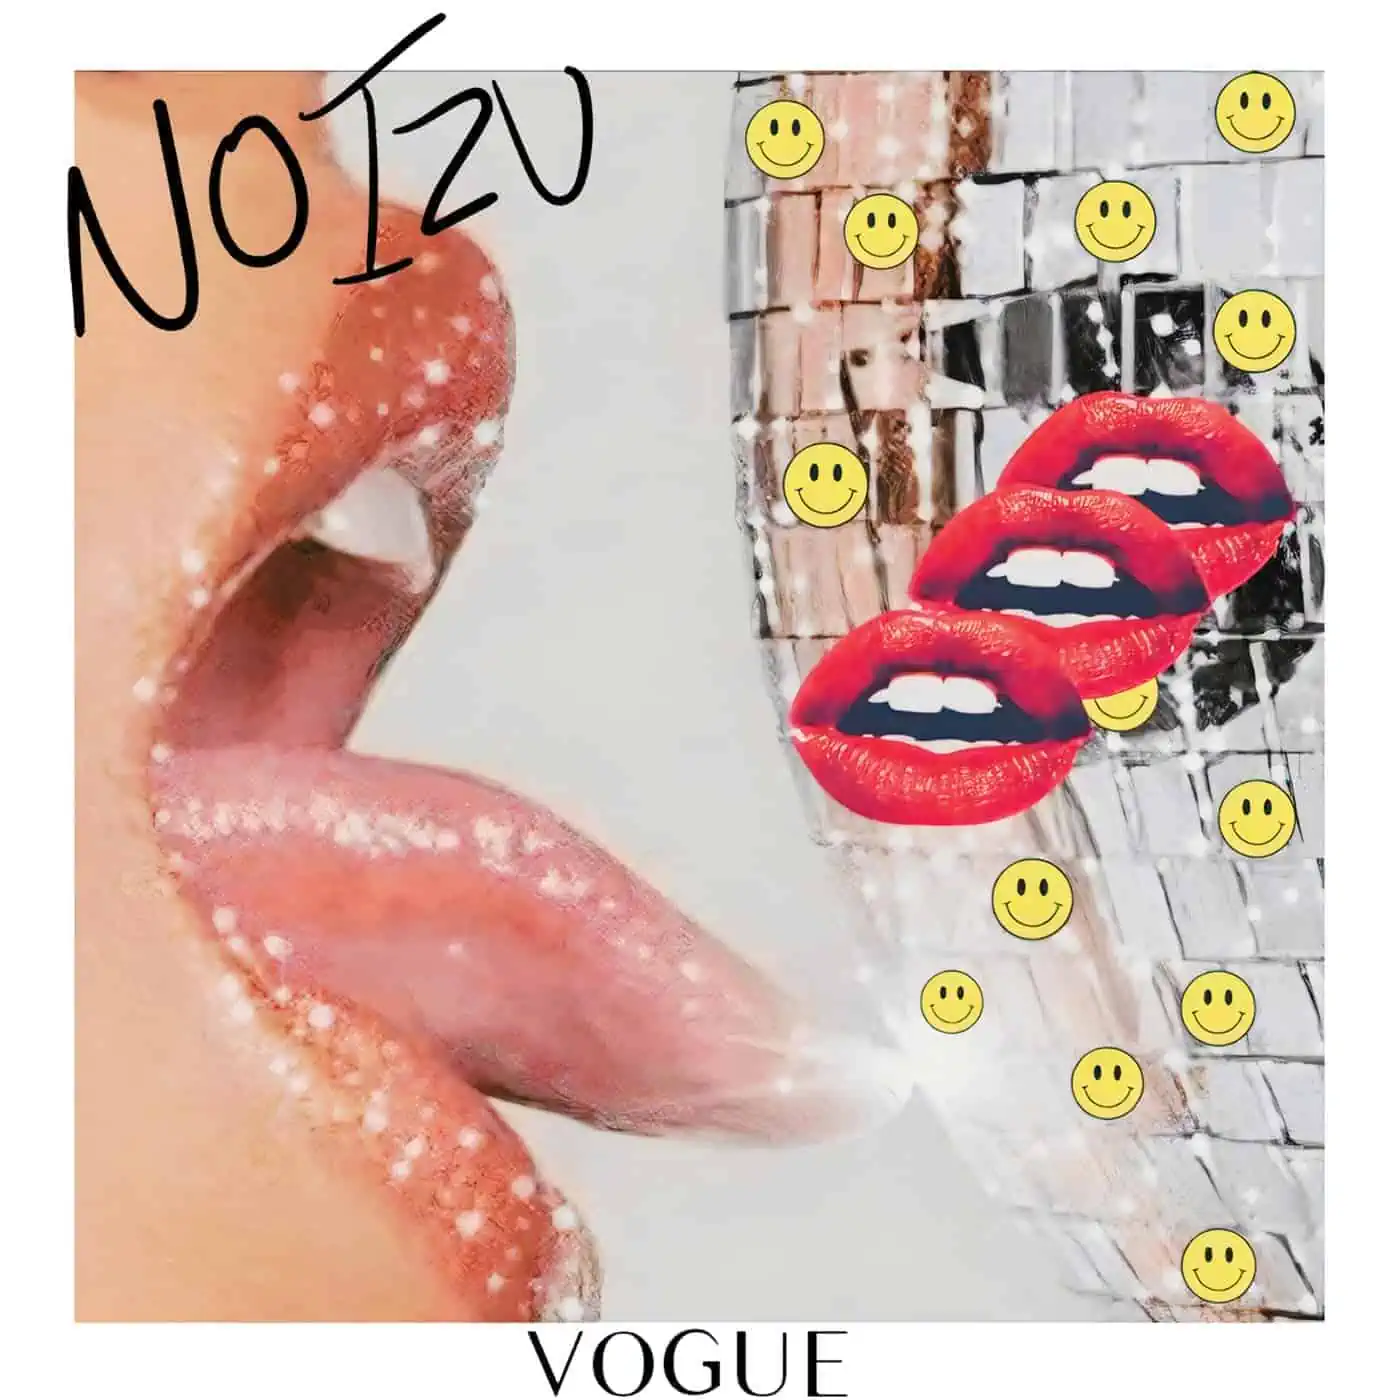 Vogue By Noizu On Techne » Electrobuzz